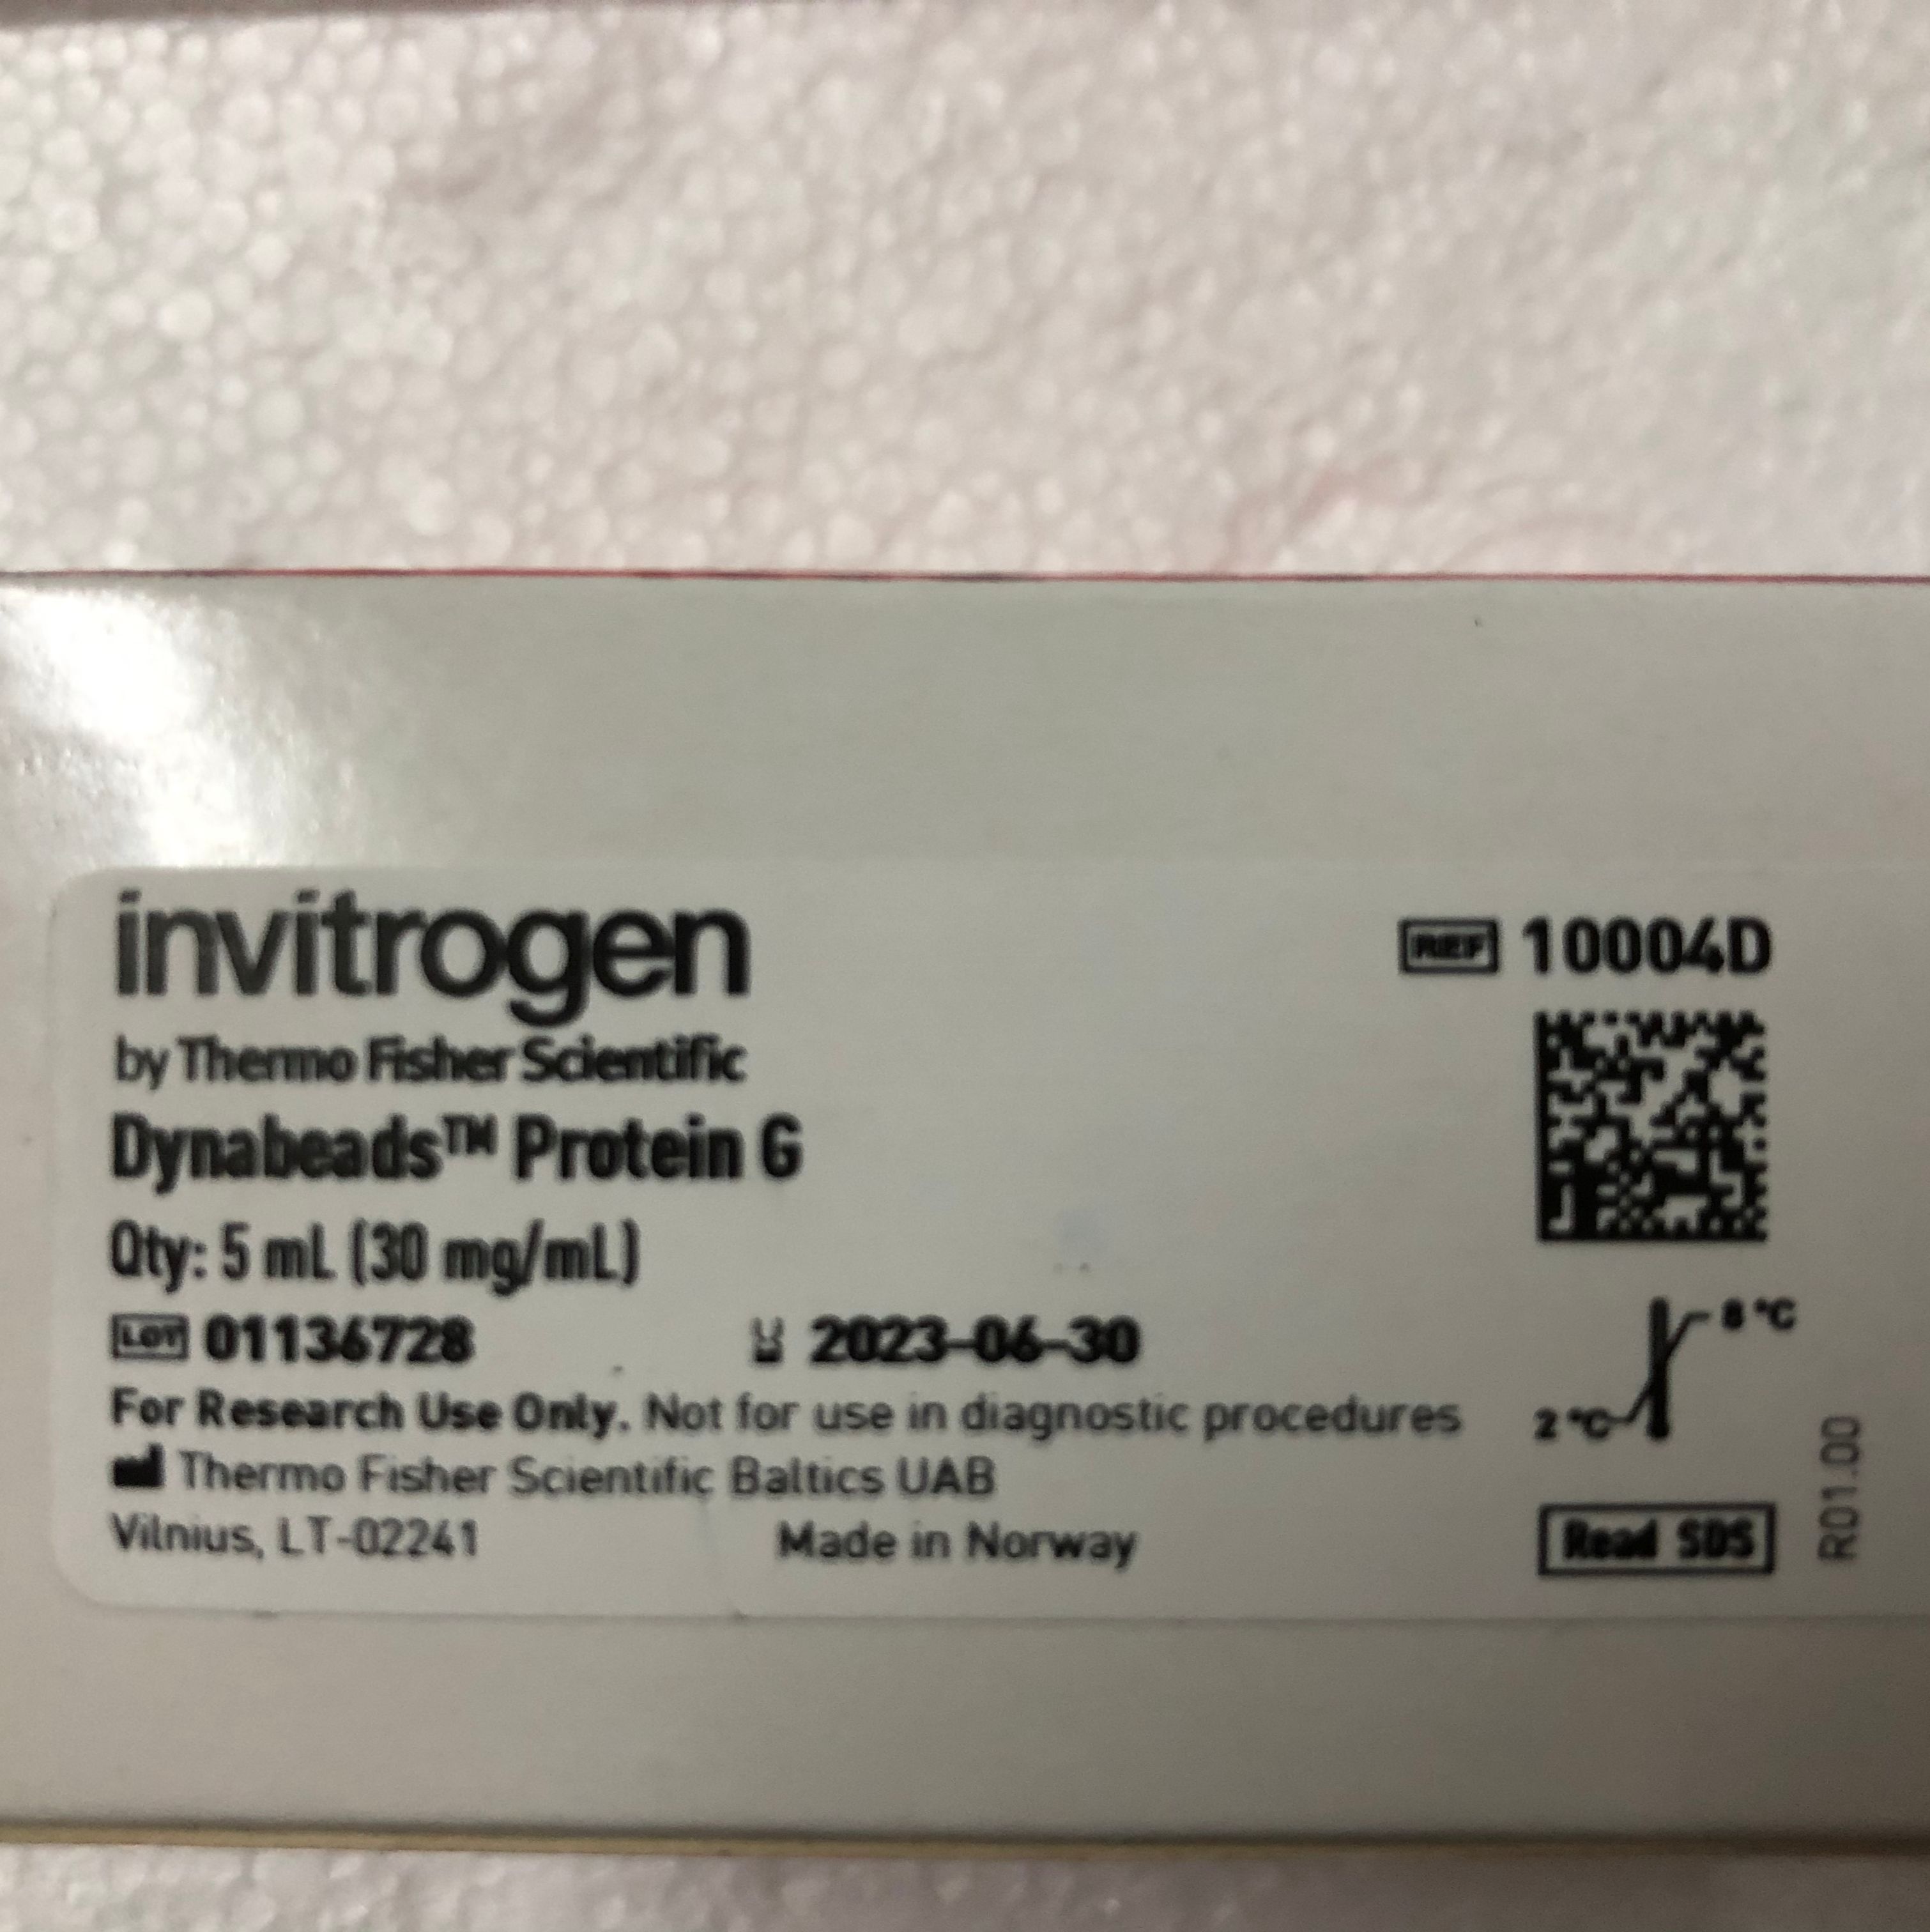 Invitrogen 10004D用于免疫沉淀的免疫磁珠蛋白G睿安13611631389